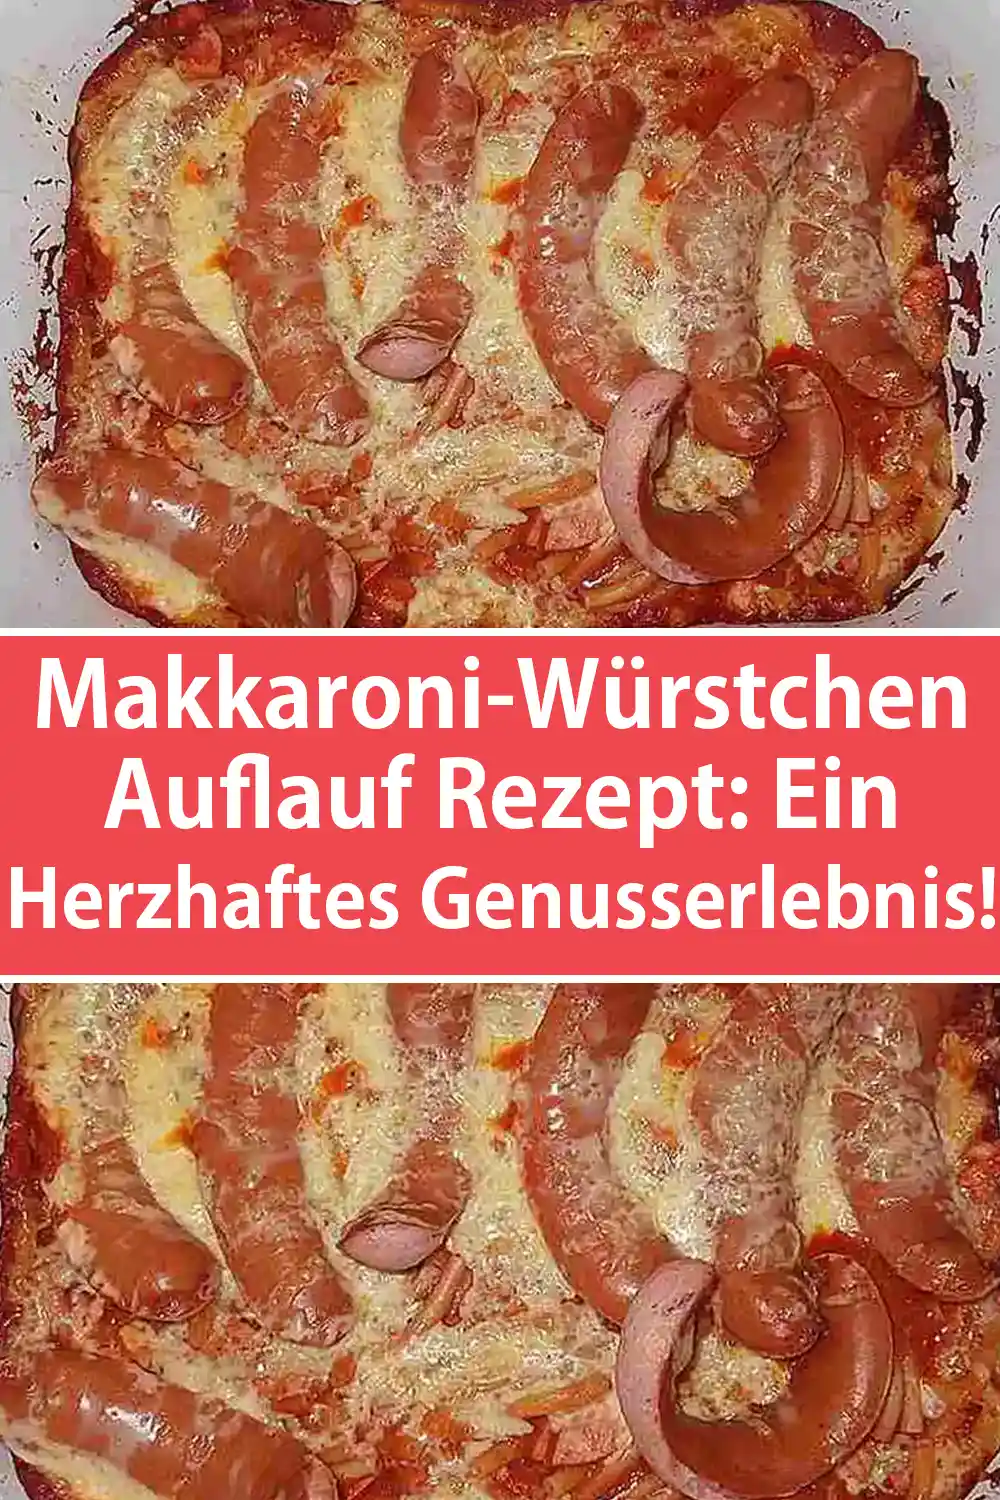 Makkaroni-Würstchen-Auflauf Rezept: Ein herzhaftes Genusserlebnis!